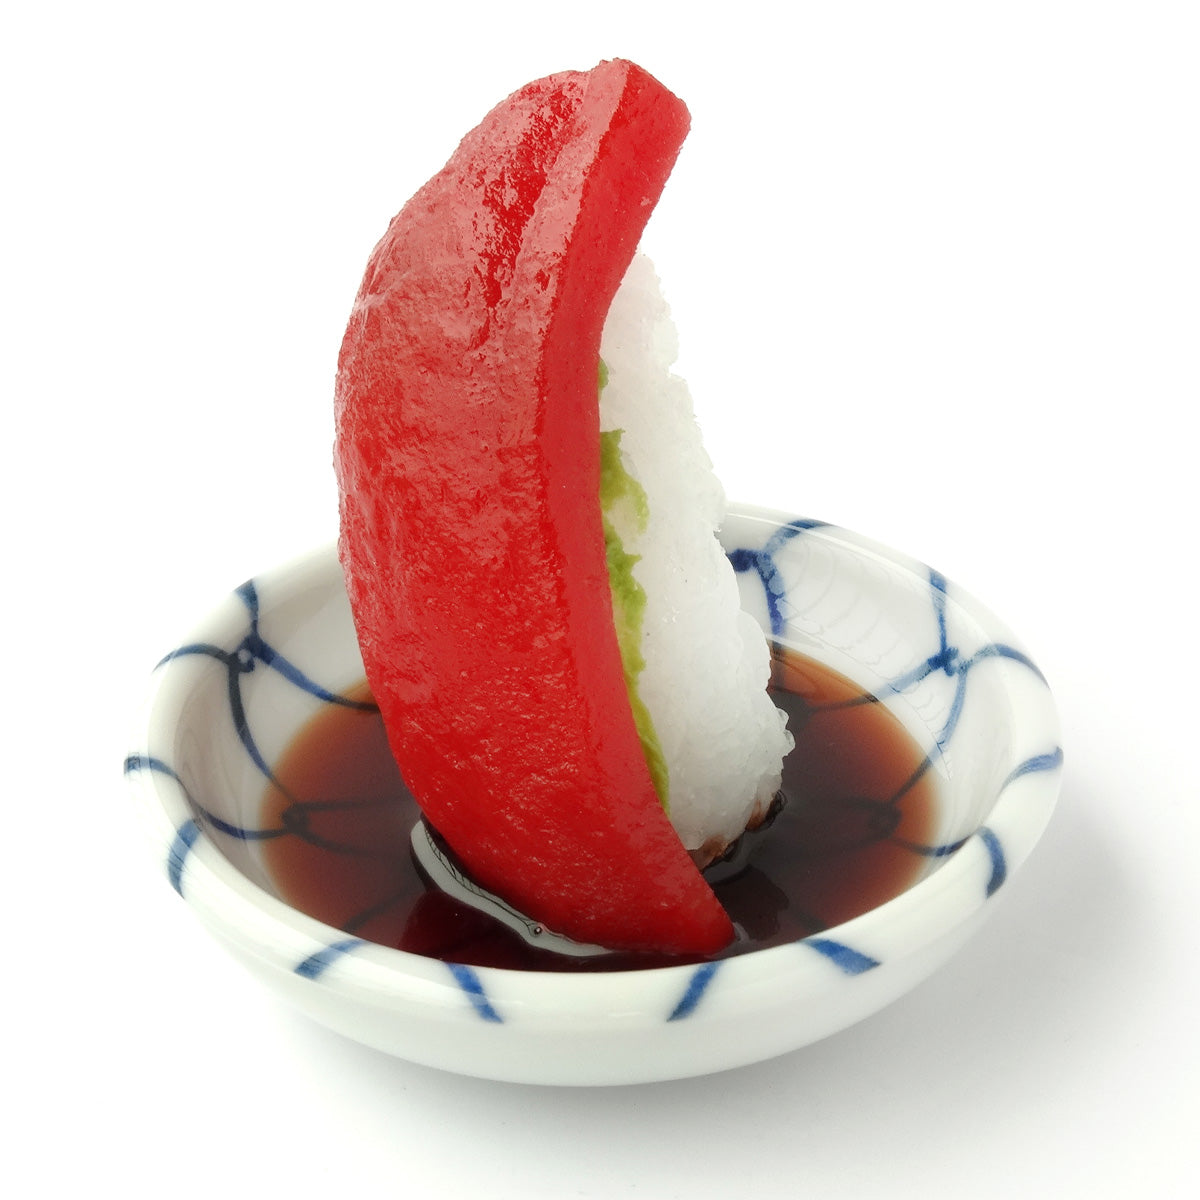 これは元祖食品サンプル屋の「つまみ寿司 マグロ」の商品画像です。